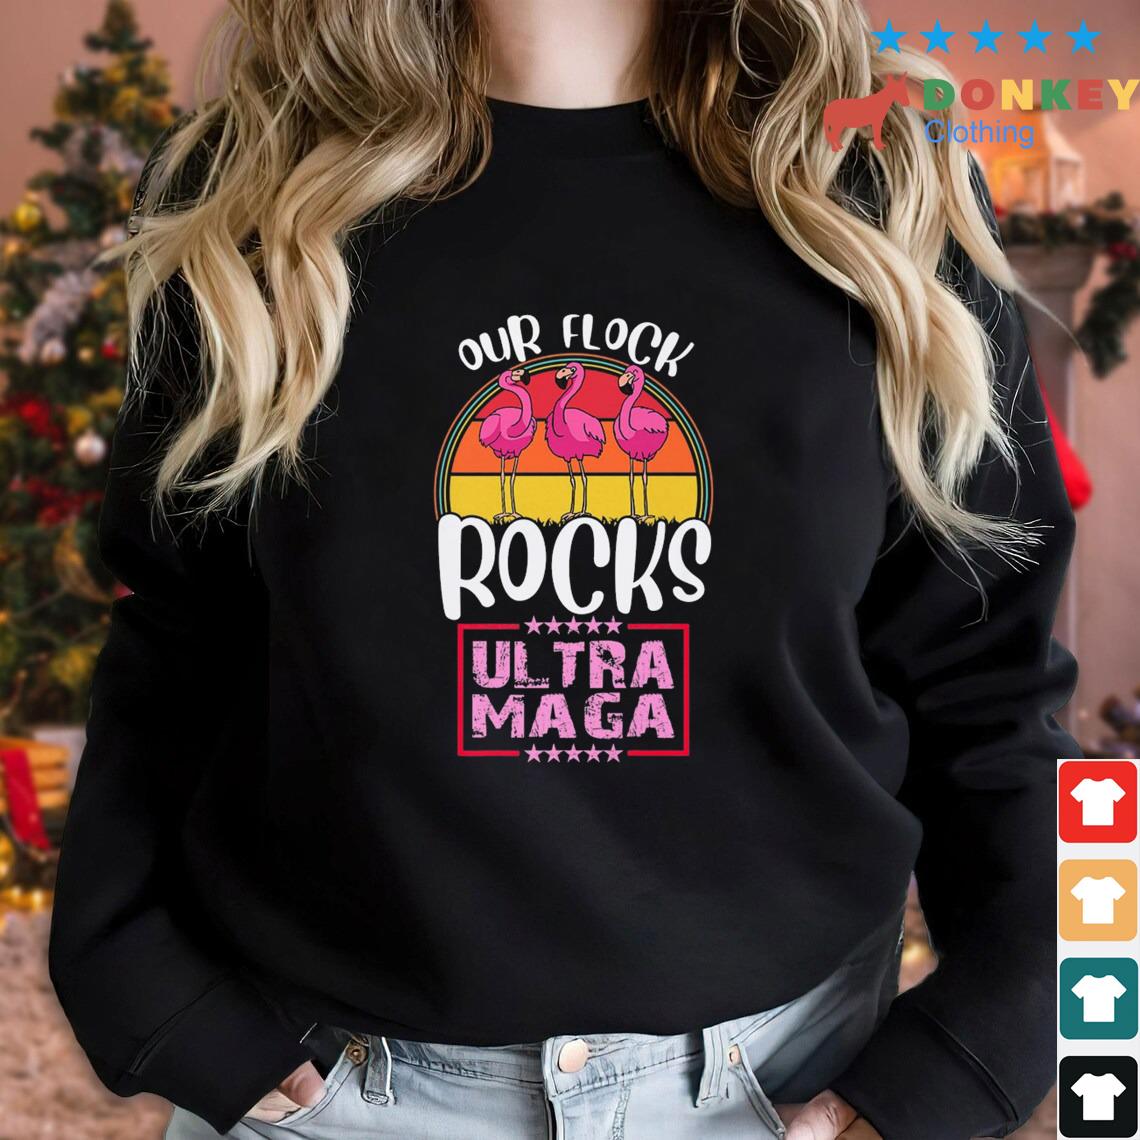 Our Flock Rocks Ultra Maga Crowd Flamingo Beach Summer Trump Shirt